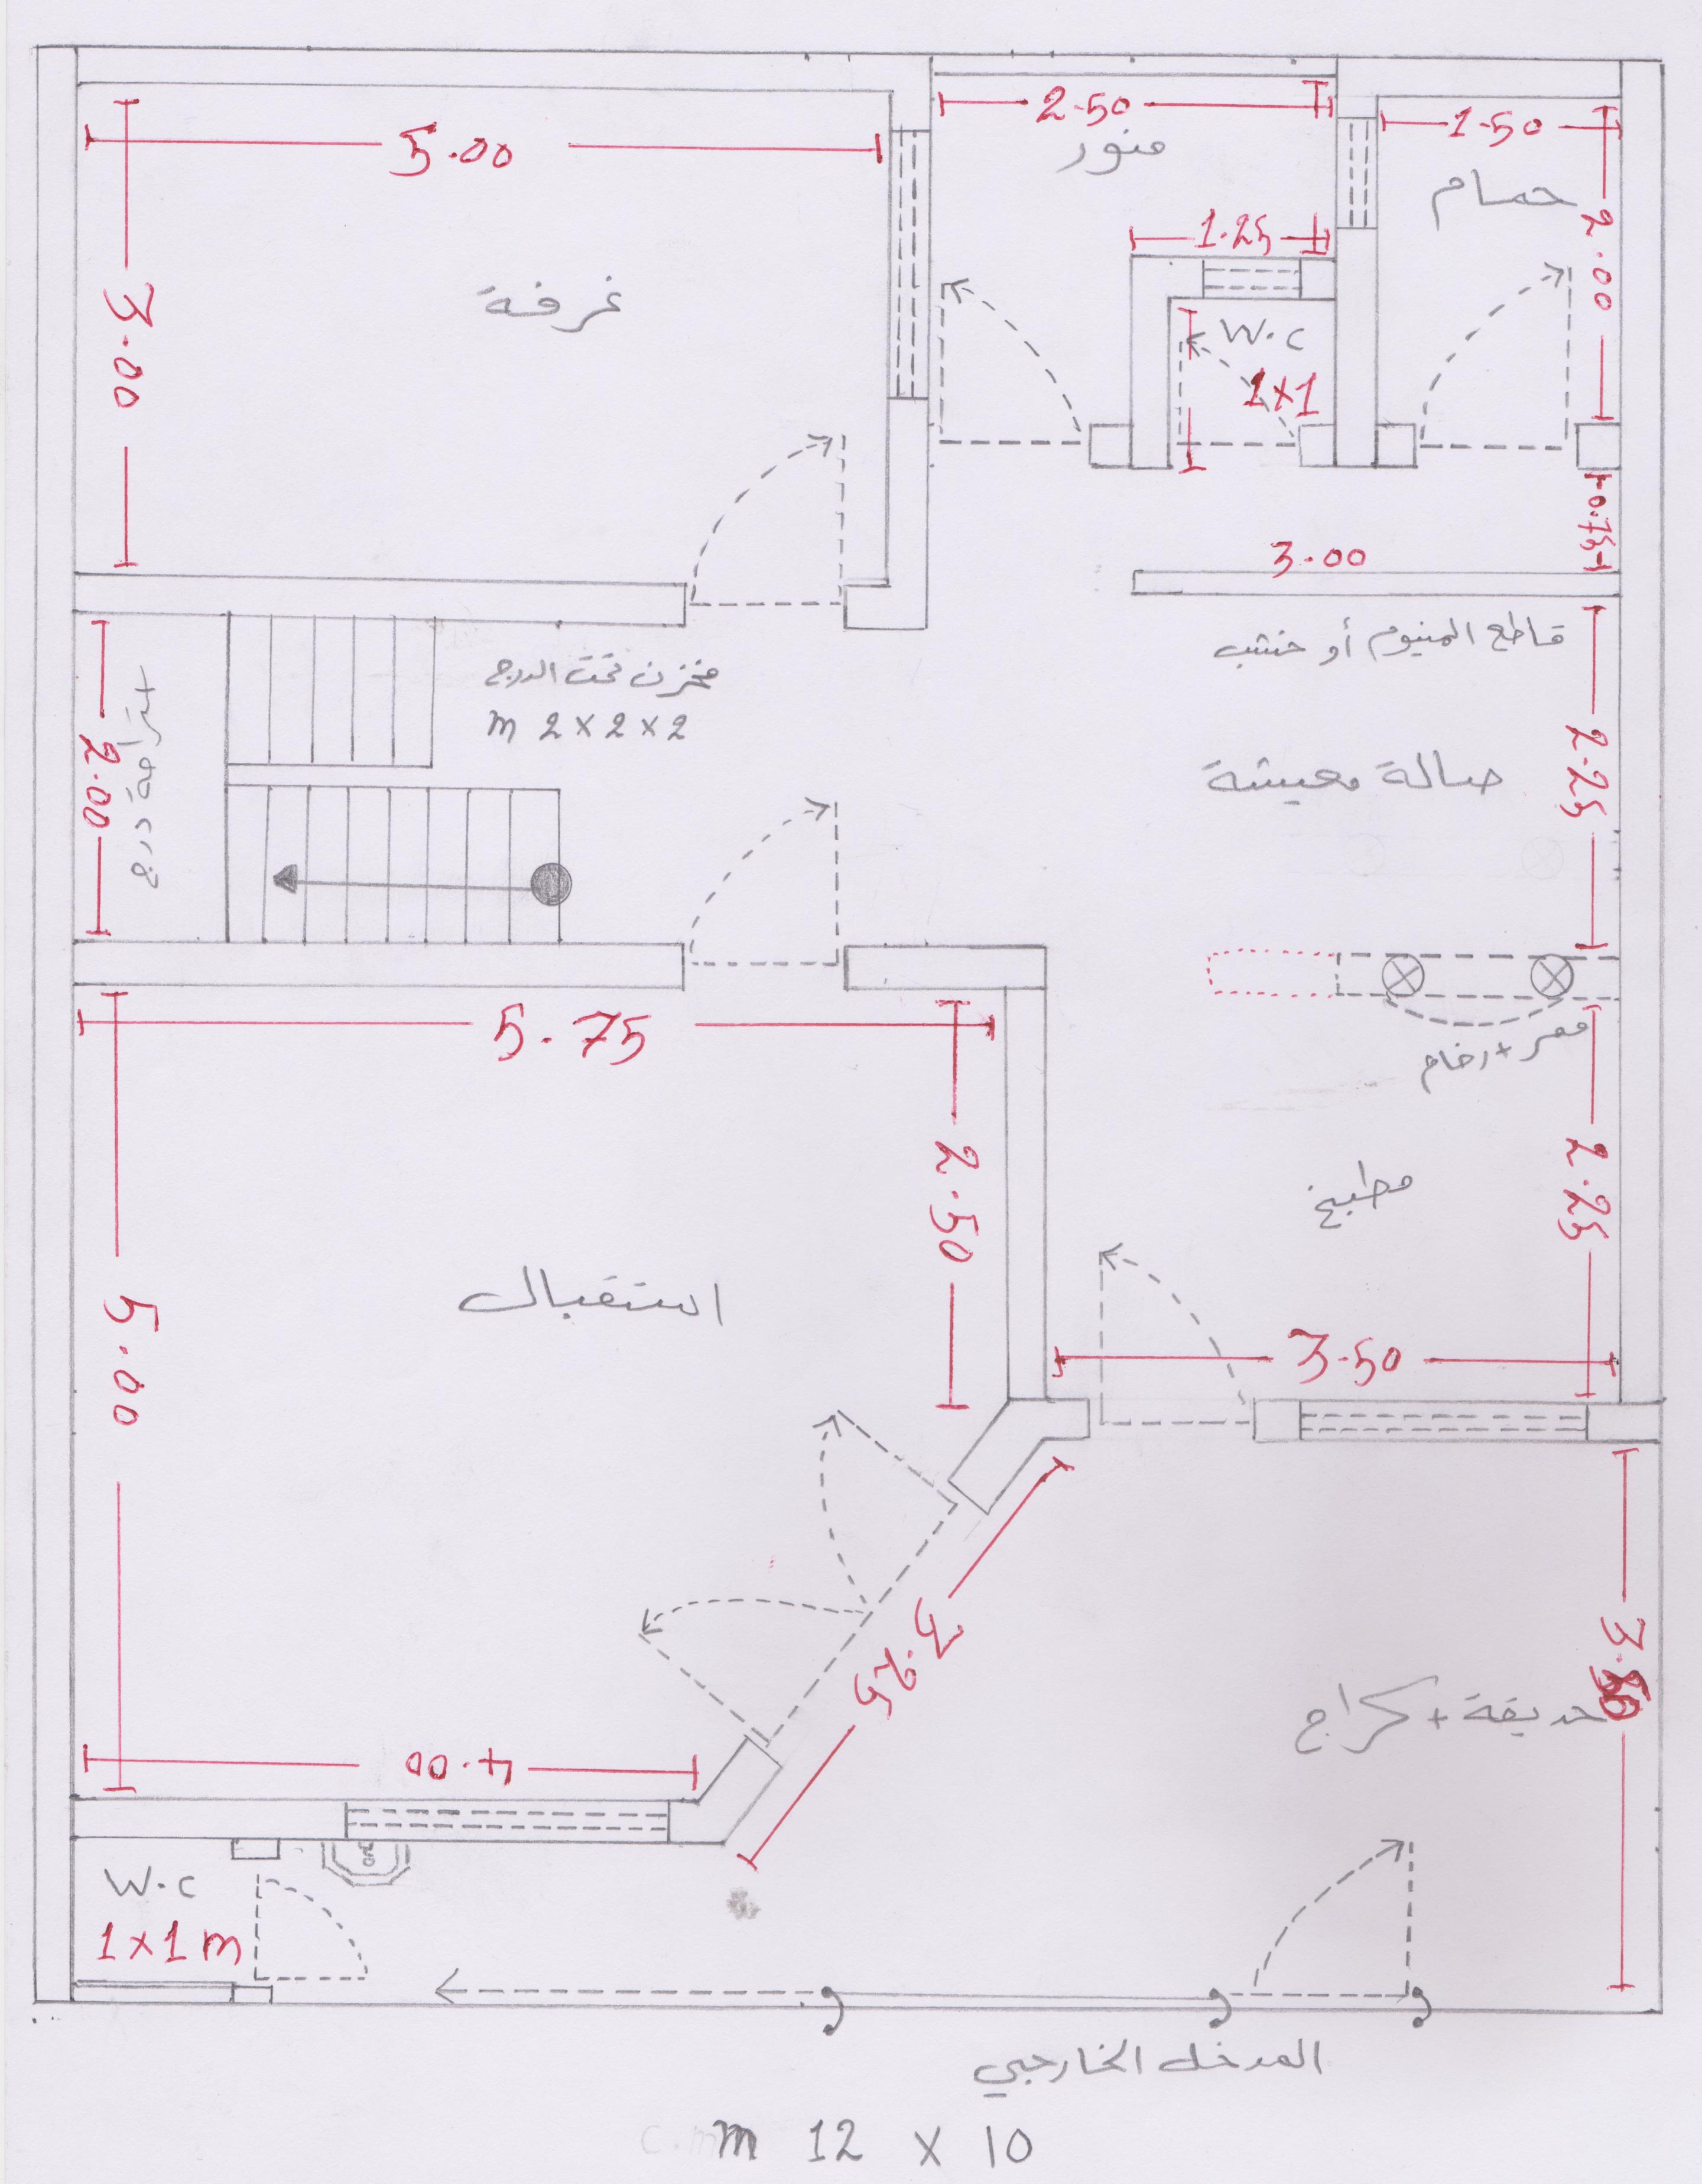 خرائط بناء خريطة 10 12 متر الى الاخ علي احمد منتديات درر العراق